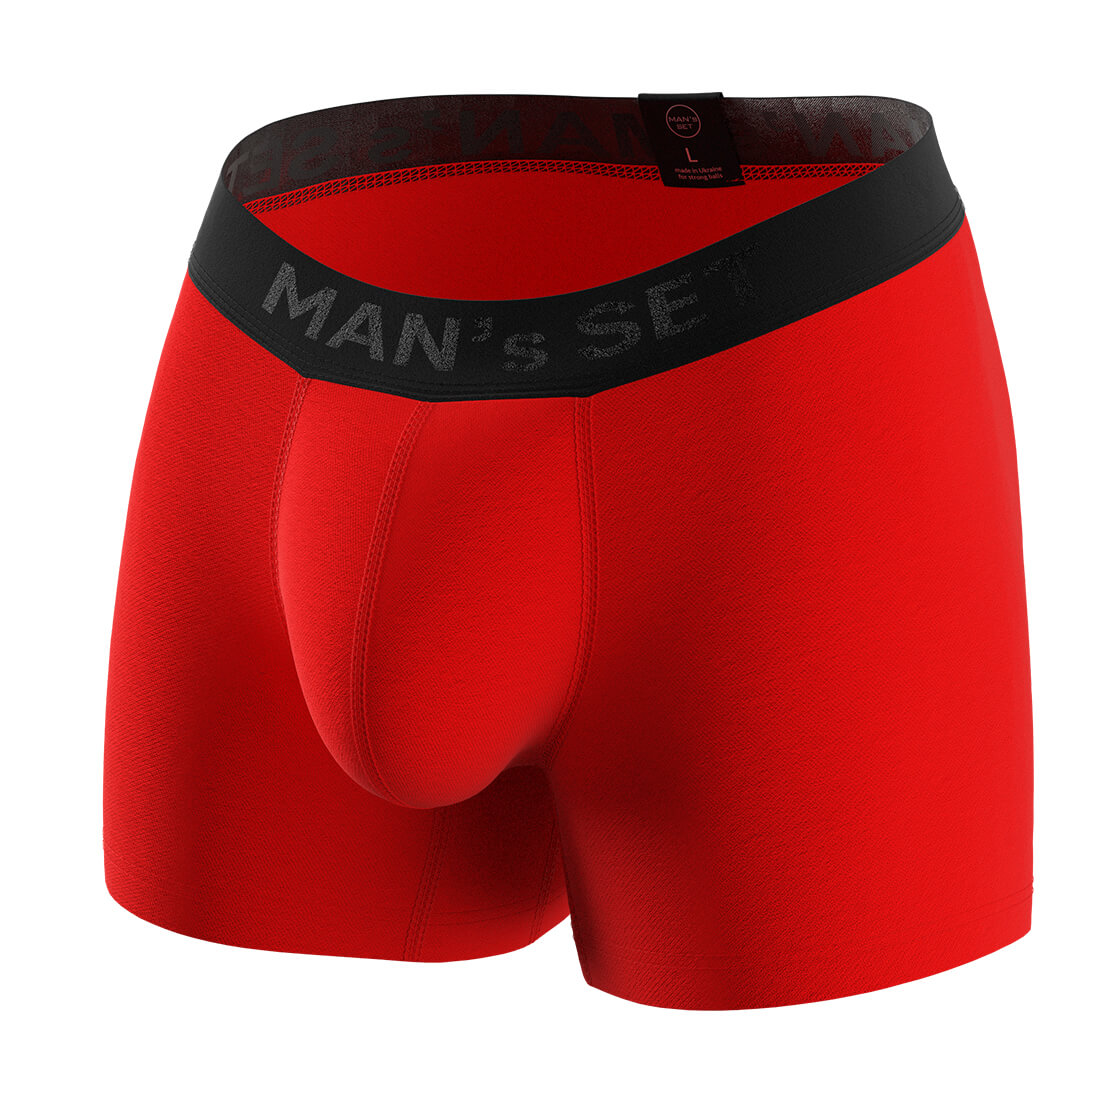 Мужские анатомические боксеры, Intimate, Black Series, красный MansSet